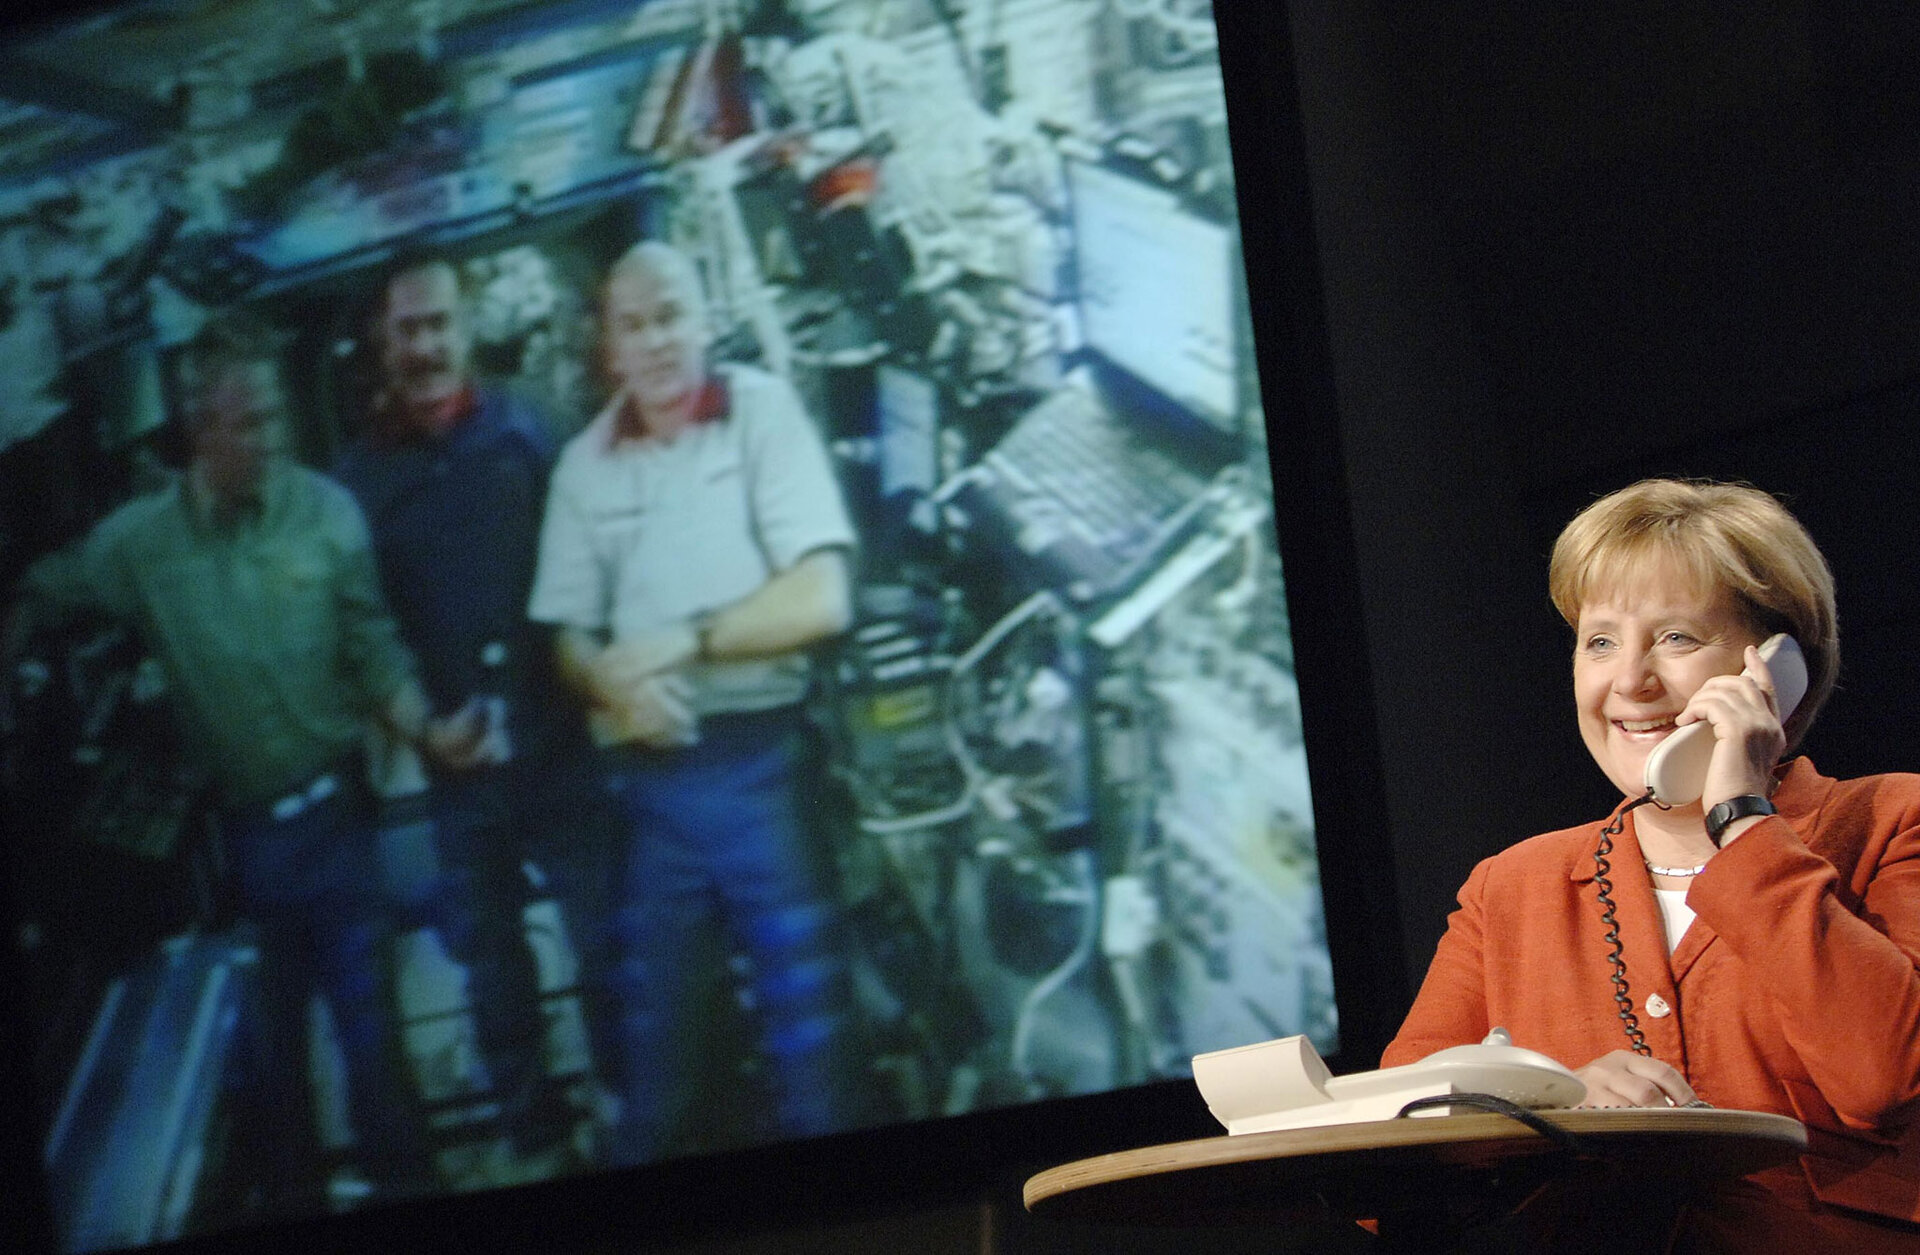 German Chancellor Merkel speaks with ESA astronaut Reiter